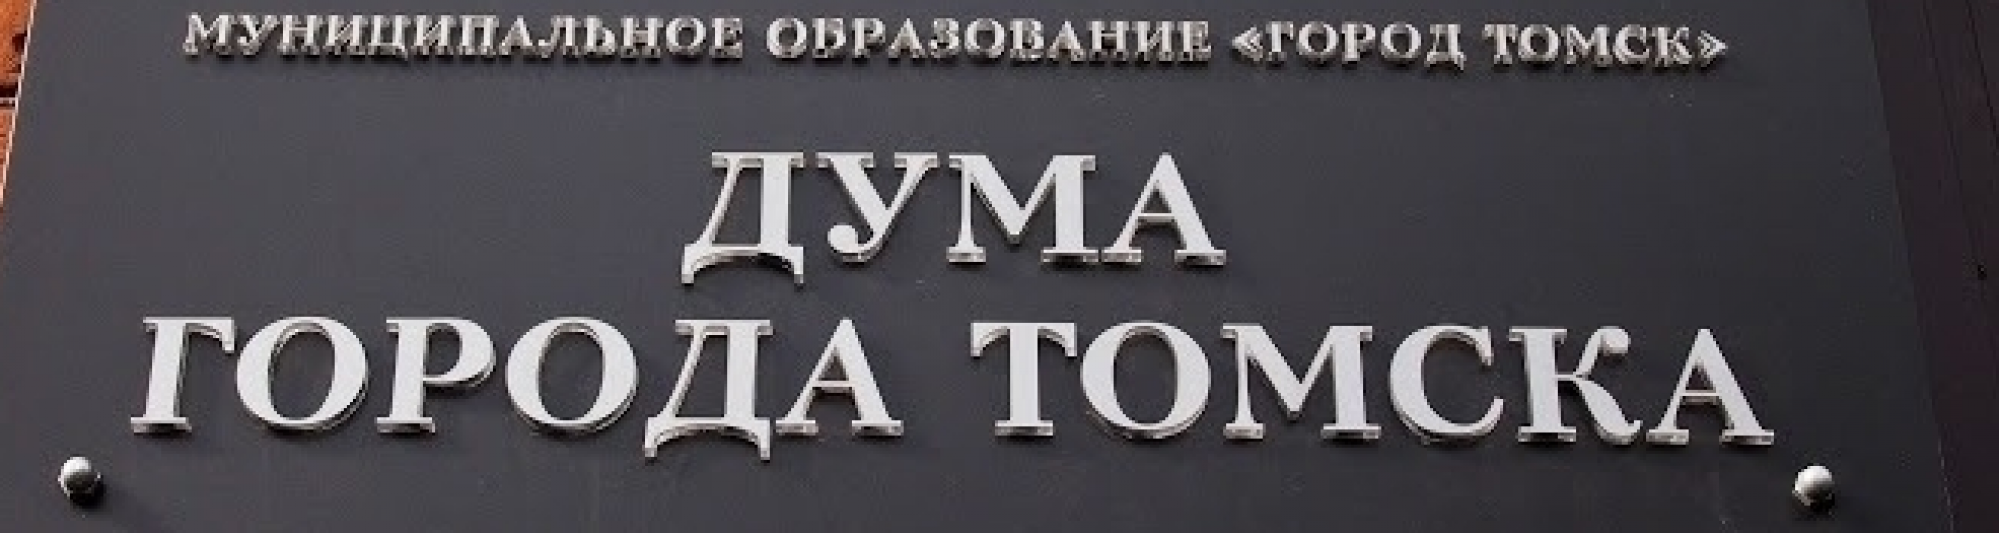 Анонс мероприятий Думы города Томска на неделю